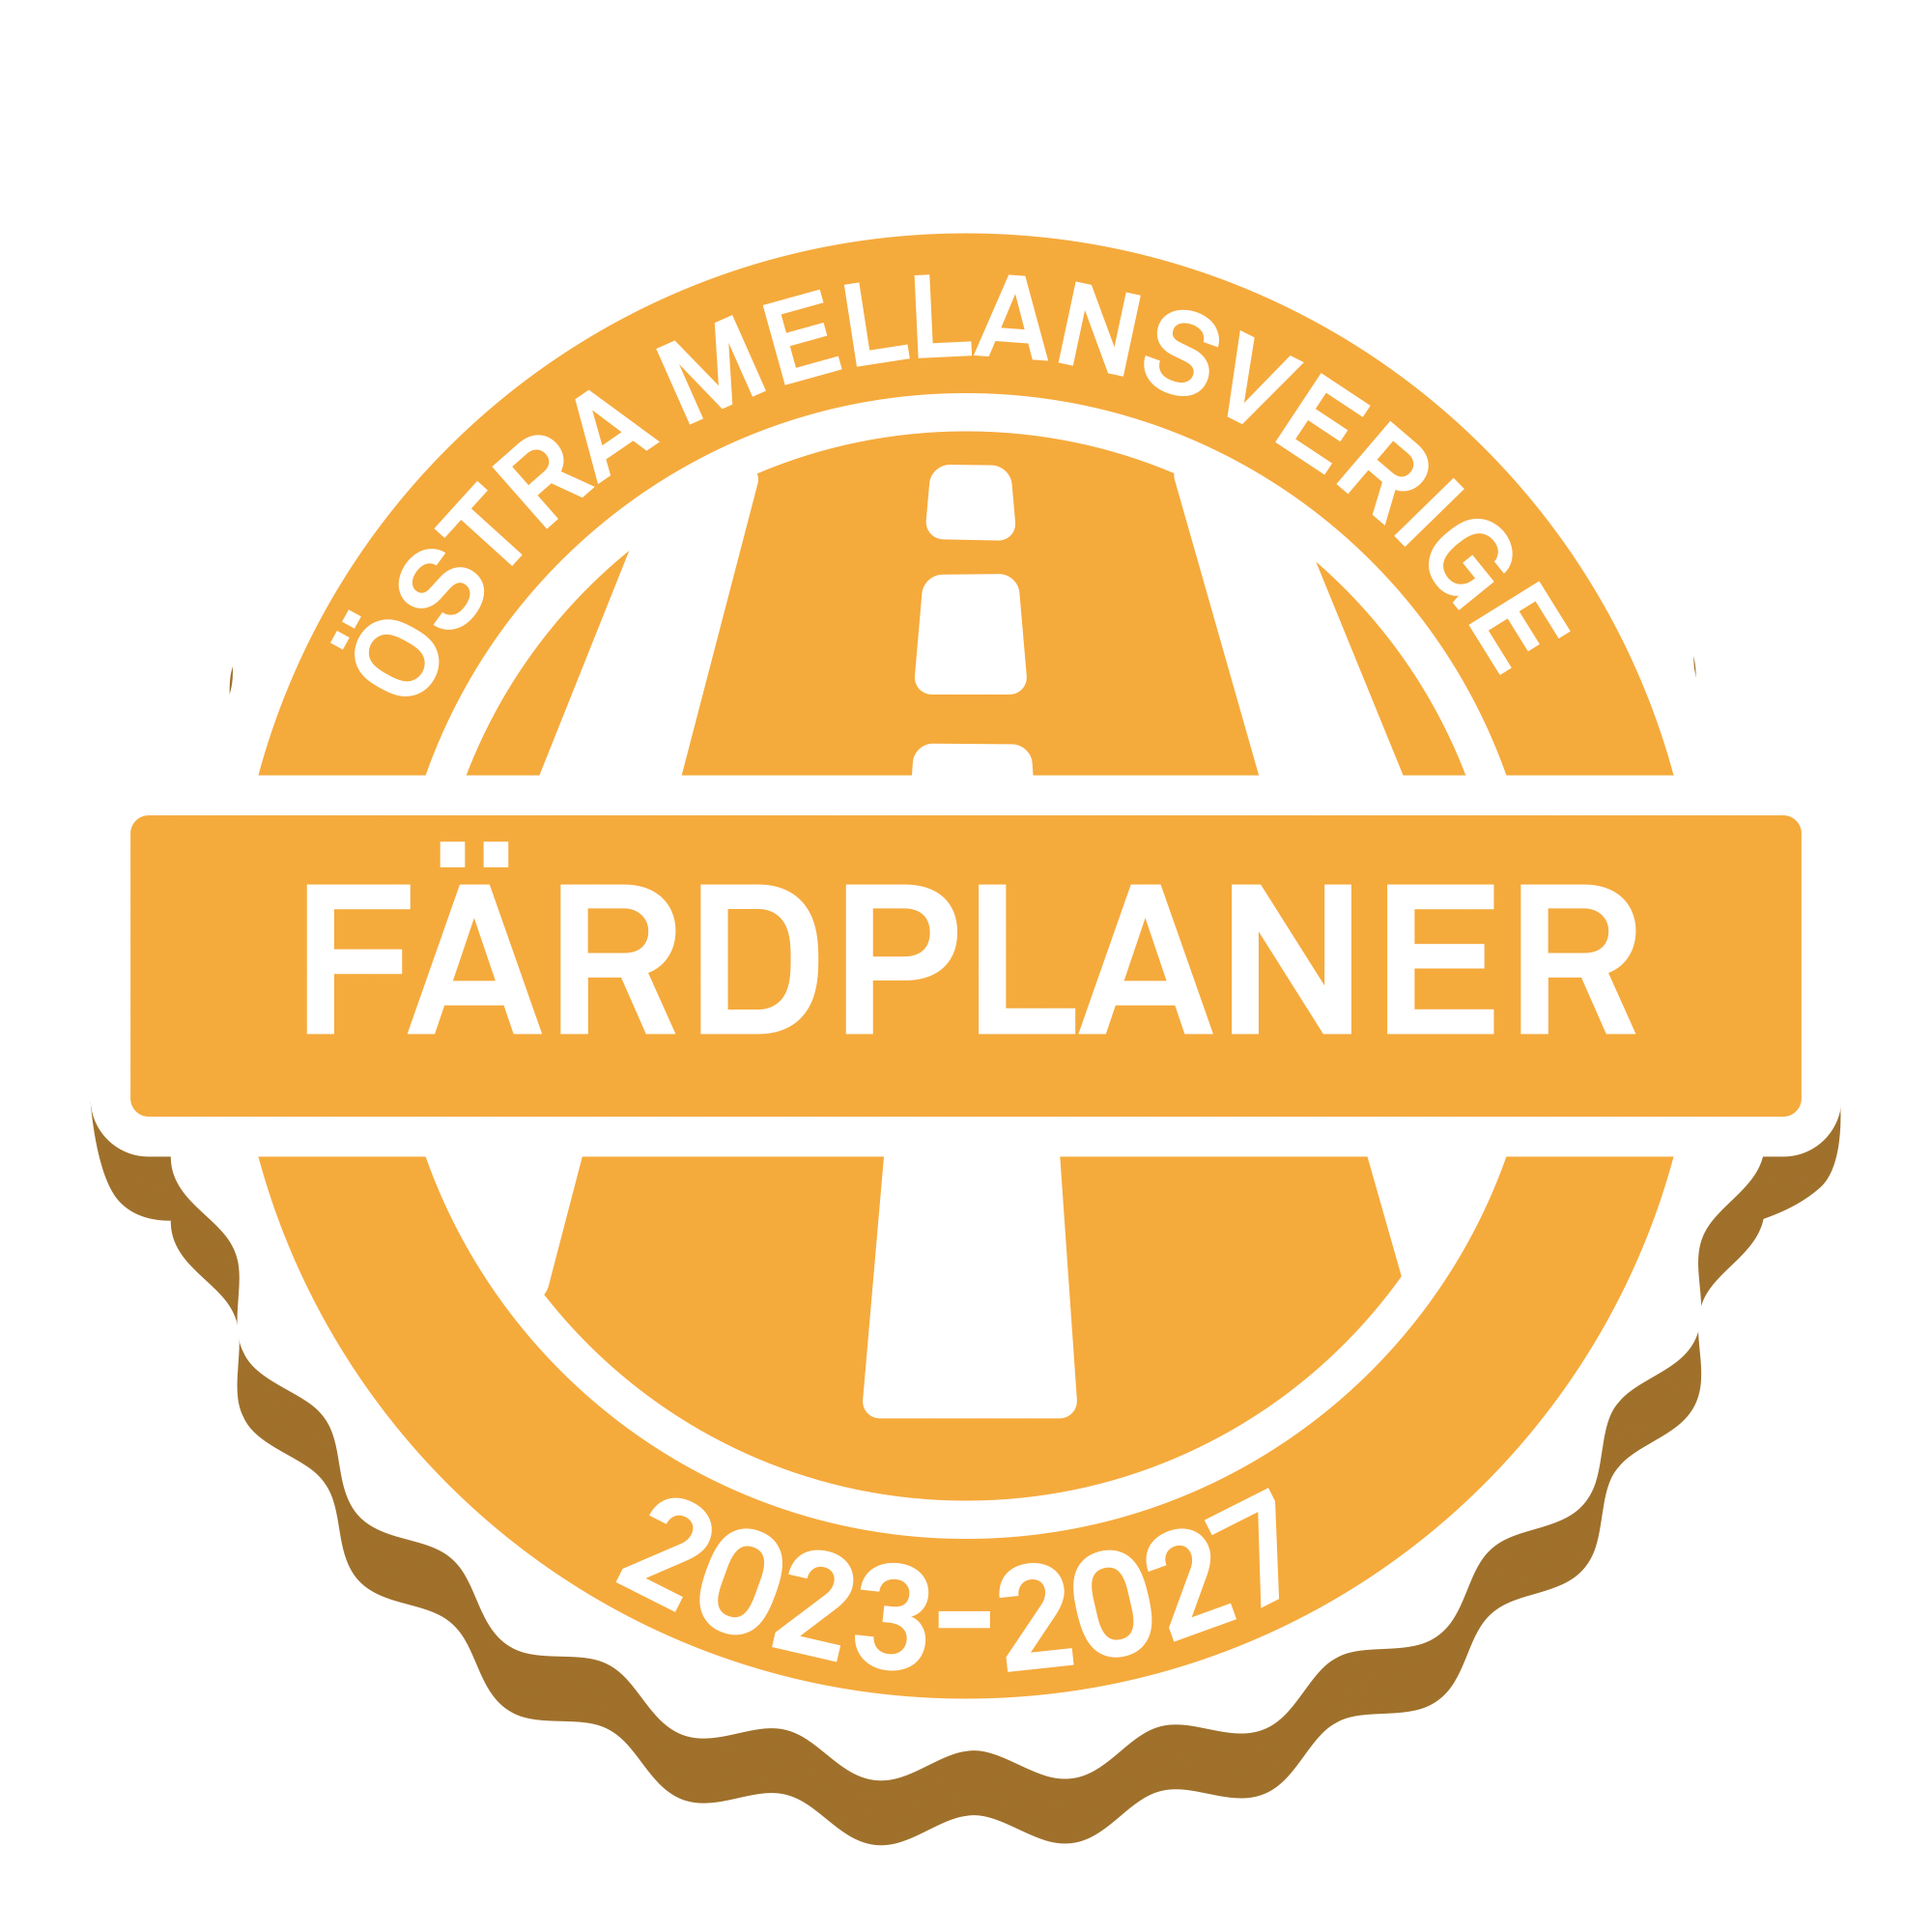 Projektlogga med text: Färdplaner Östra Mellansverige 2023-2027.